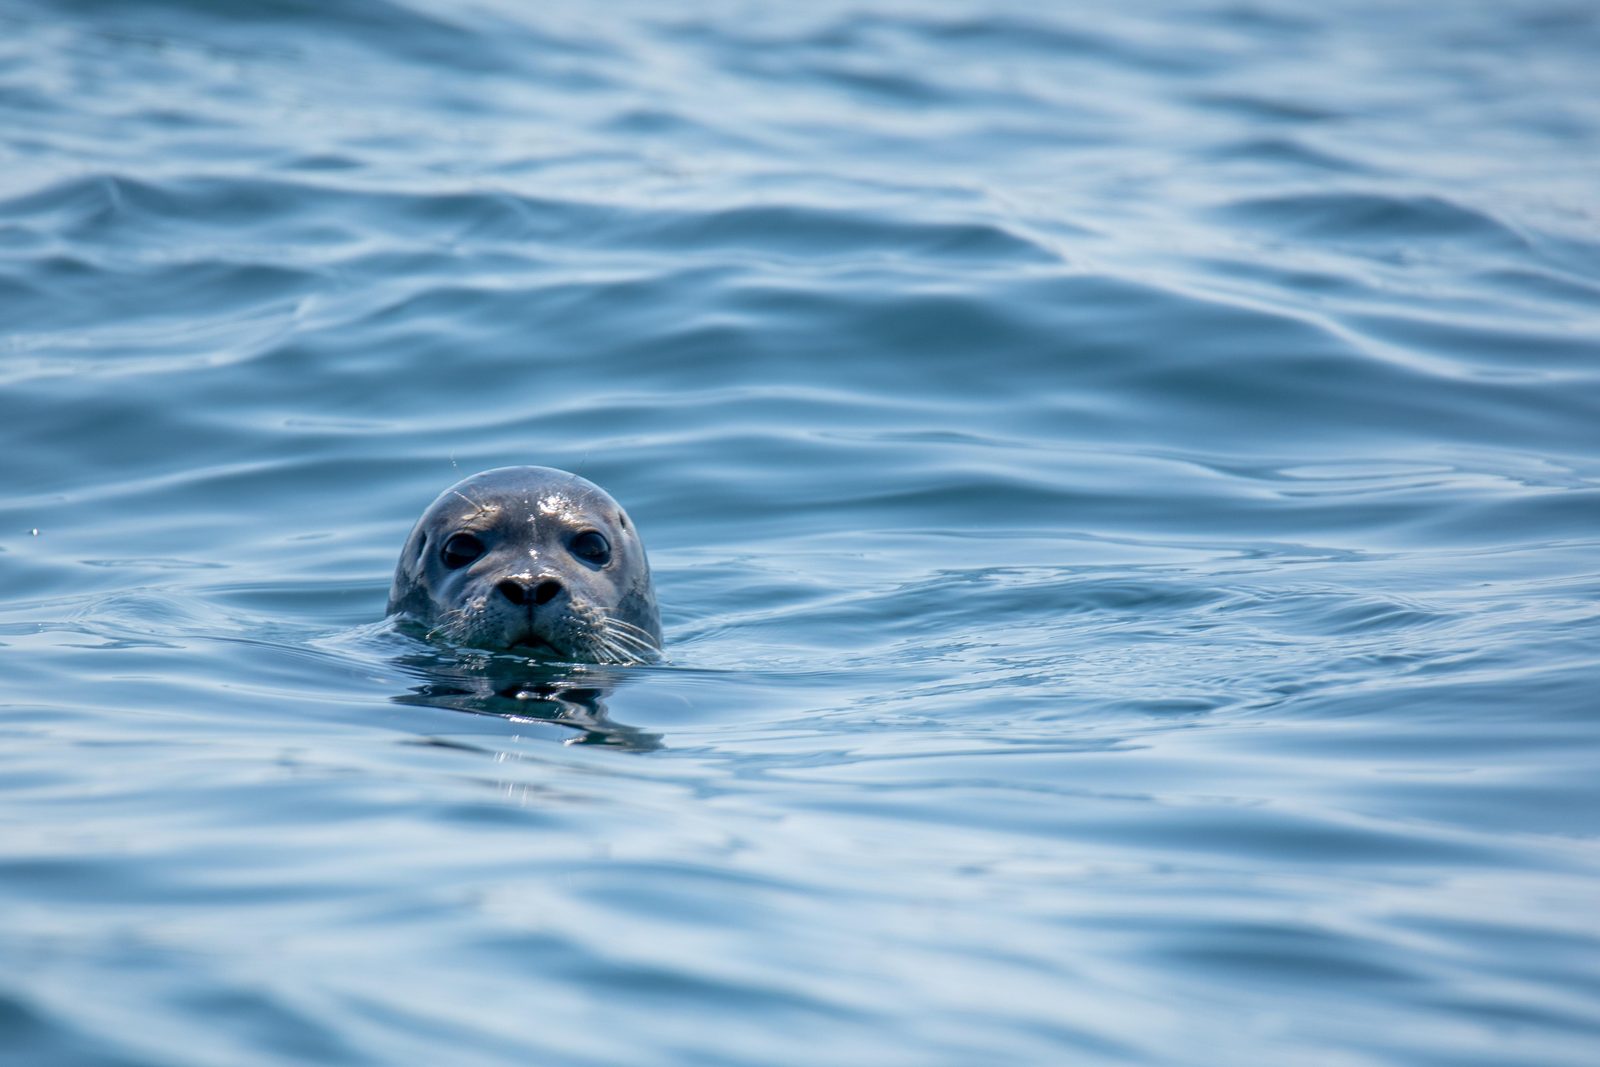 Ontdek de beste plekken om zeehonden te spotten in de Baie de Somme